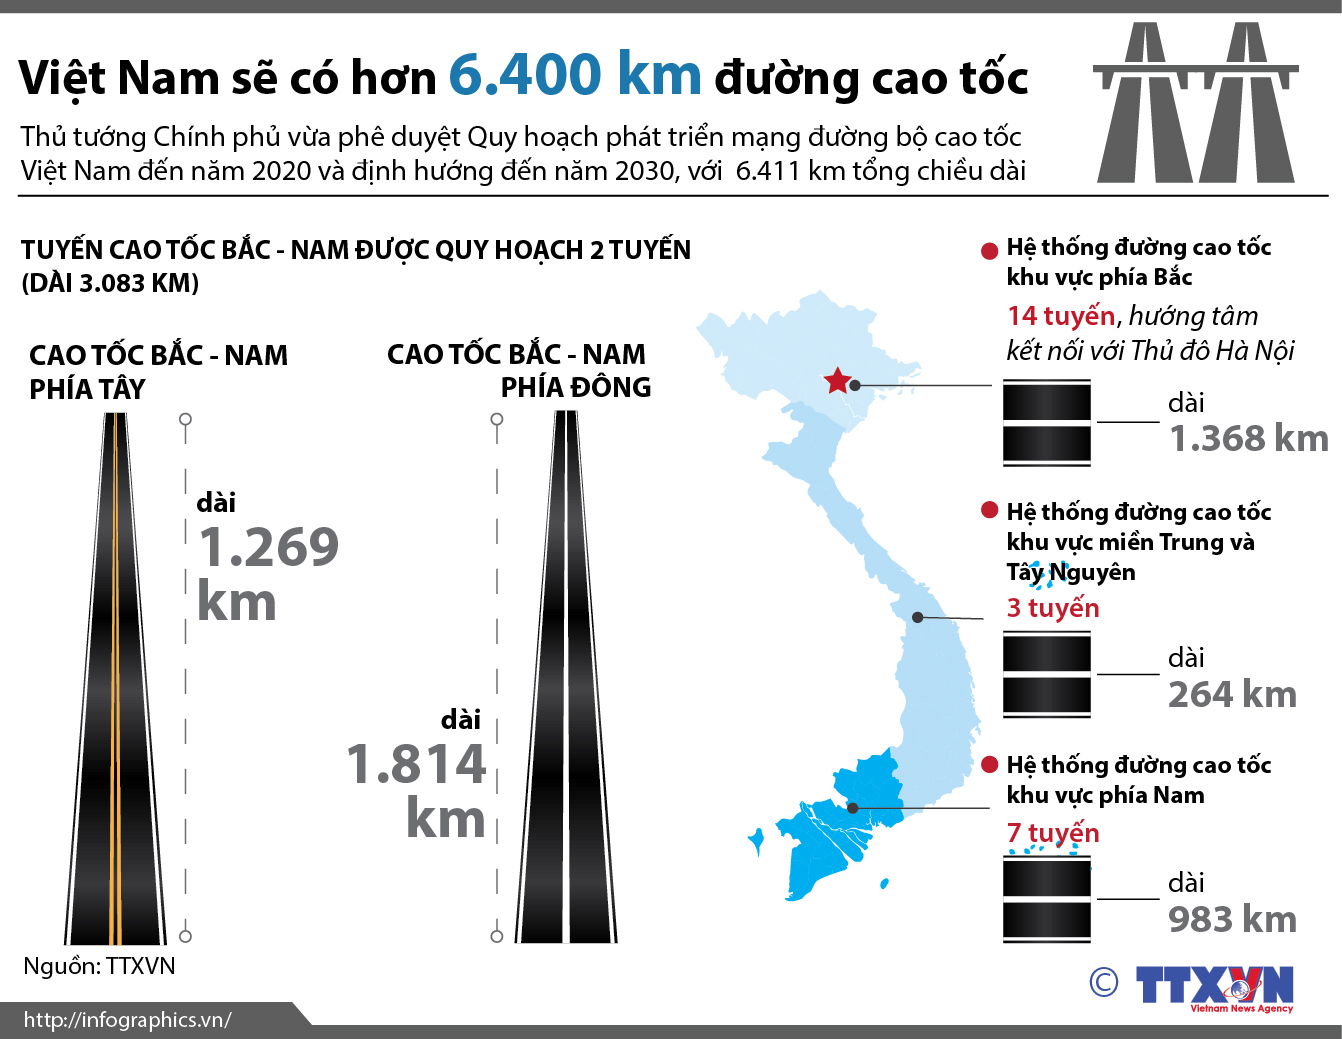 Việt Nam sẽ có hơn 6.400 km đường cao tốc